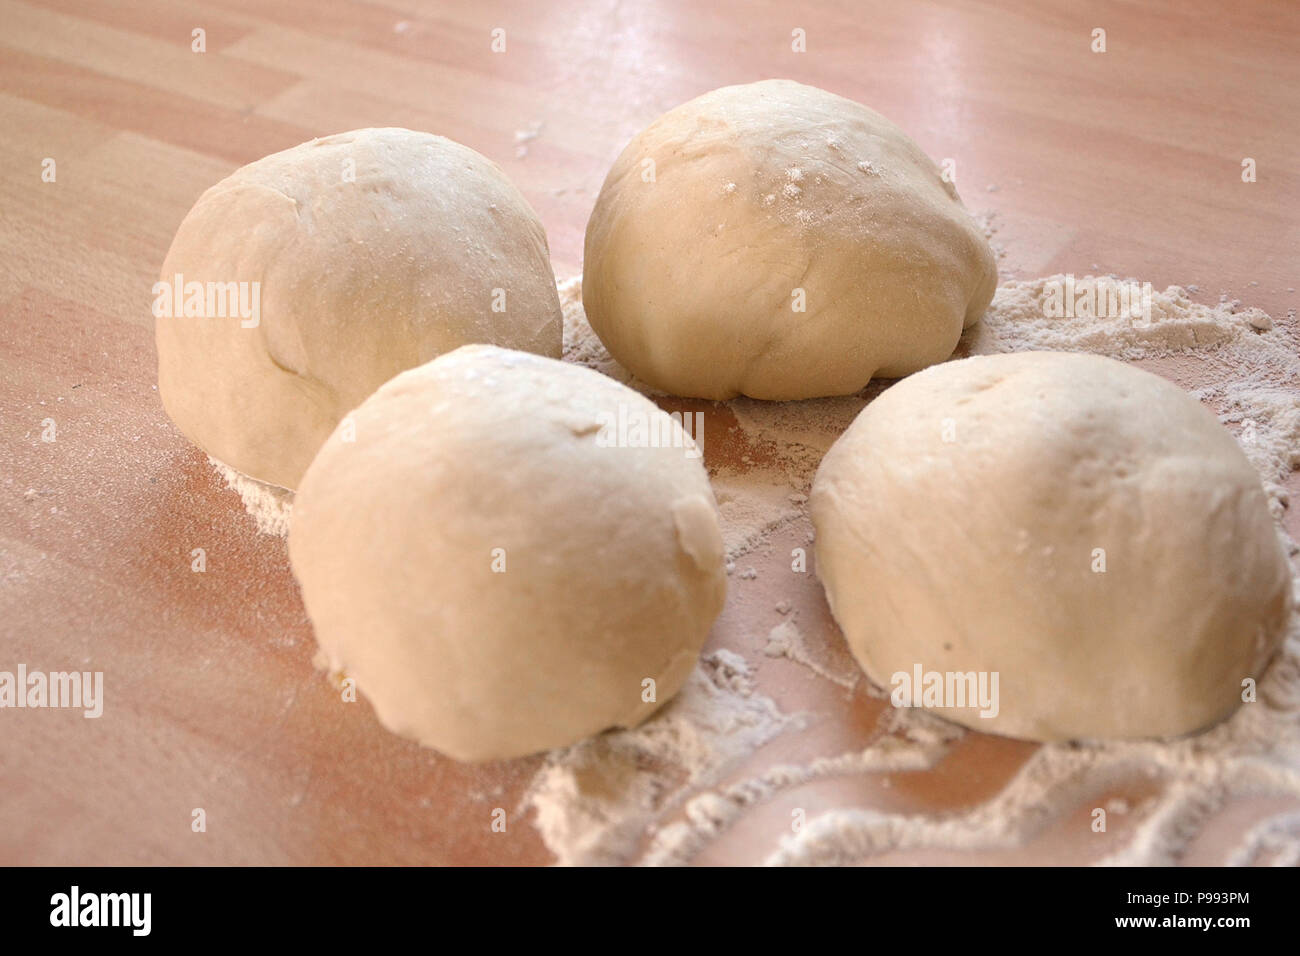 Pizza bread dough balls proving Stock Photo